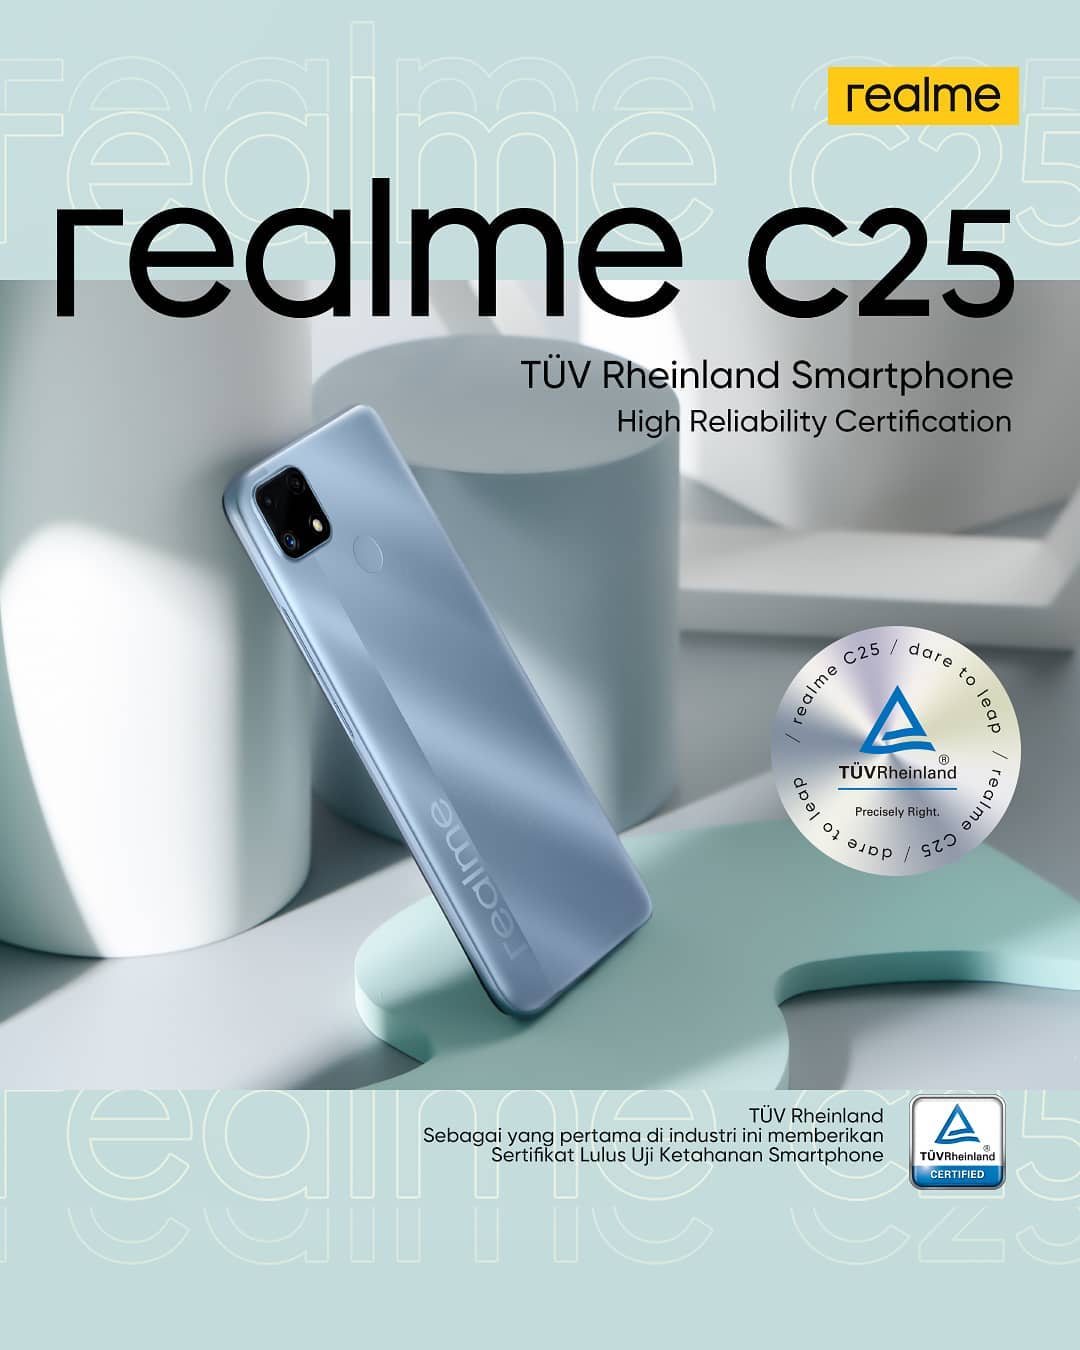 Новый бюджетный смартфон Realme C25 получил аккумулятор 6000 мАч и 6,5-дюймовый IPS дисплей